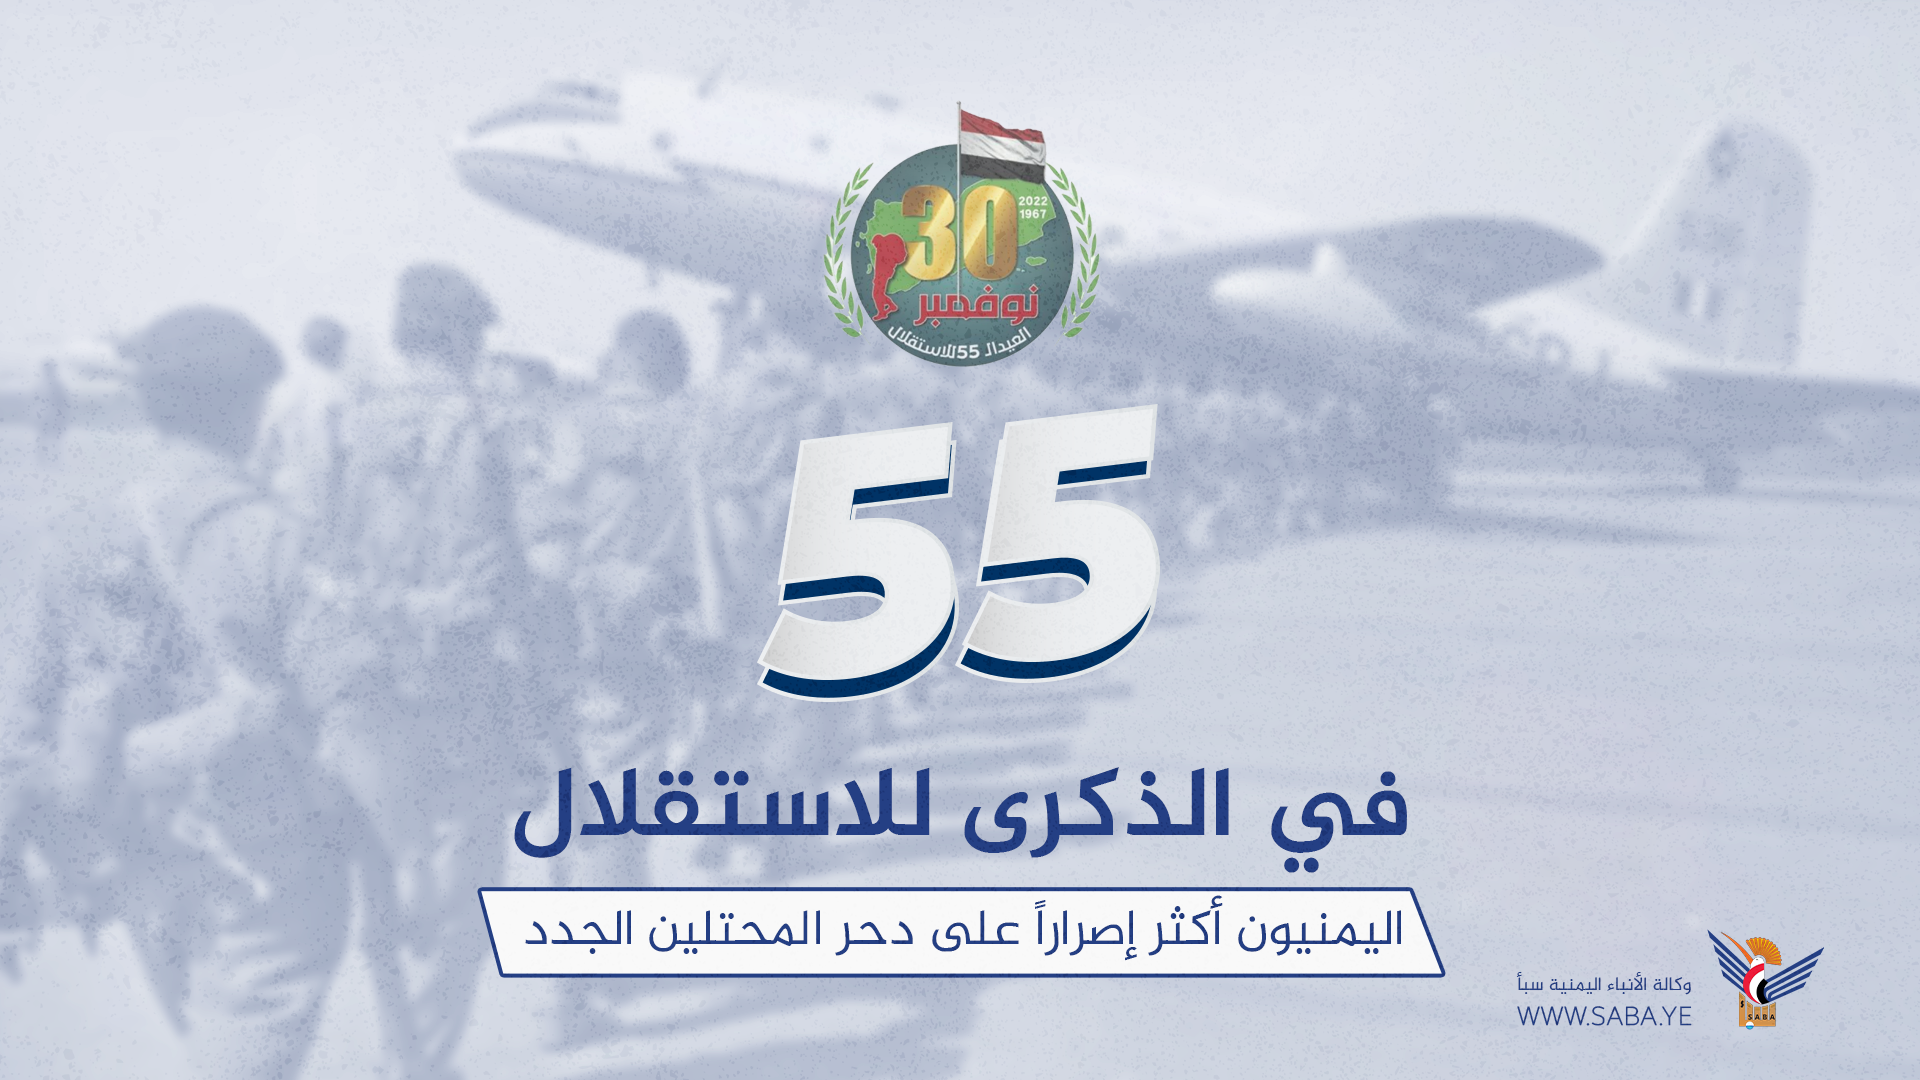 Am 55. Jahrestag des Unabhängigkeitstages ist das jemenitische Volk entschlossener, neue Besatzer zu besiegen